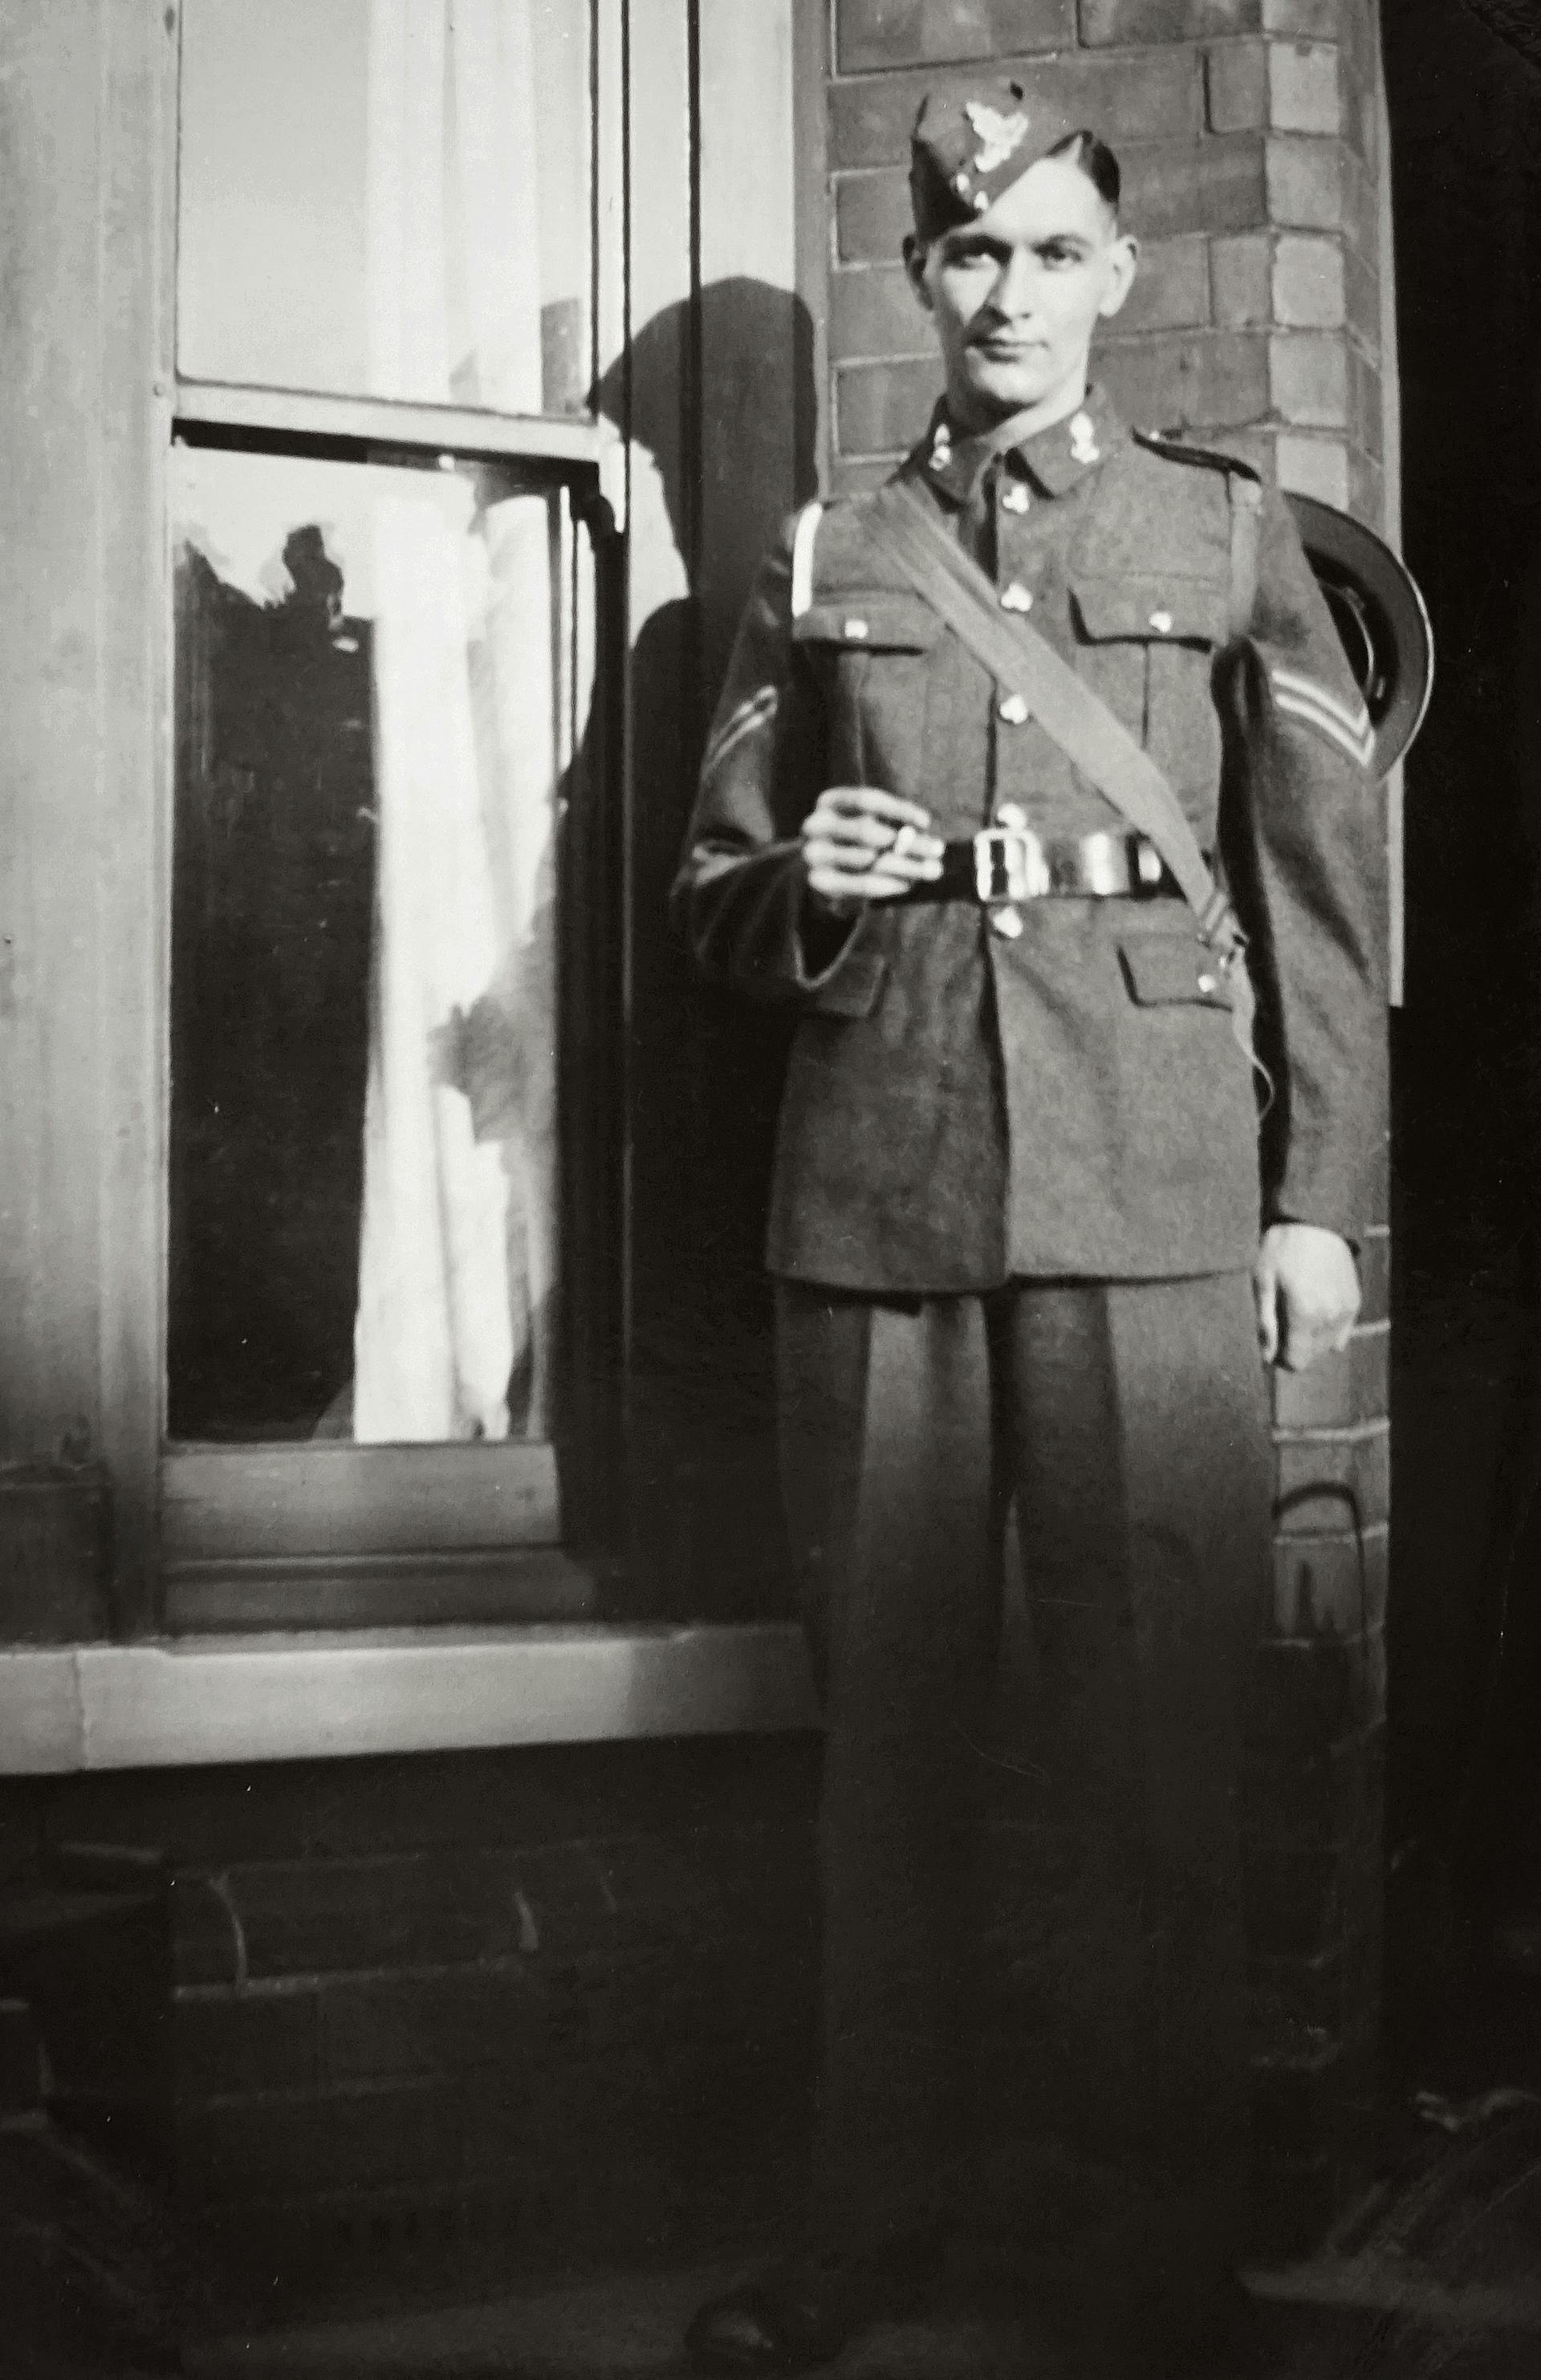 Une vieille photo d'un jeune soldat | Source : Pexels